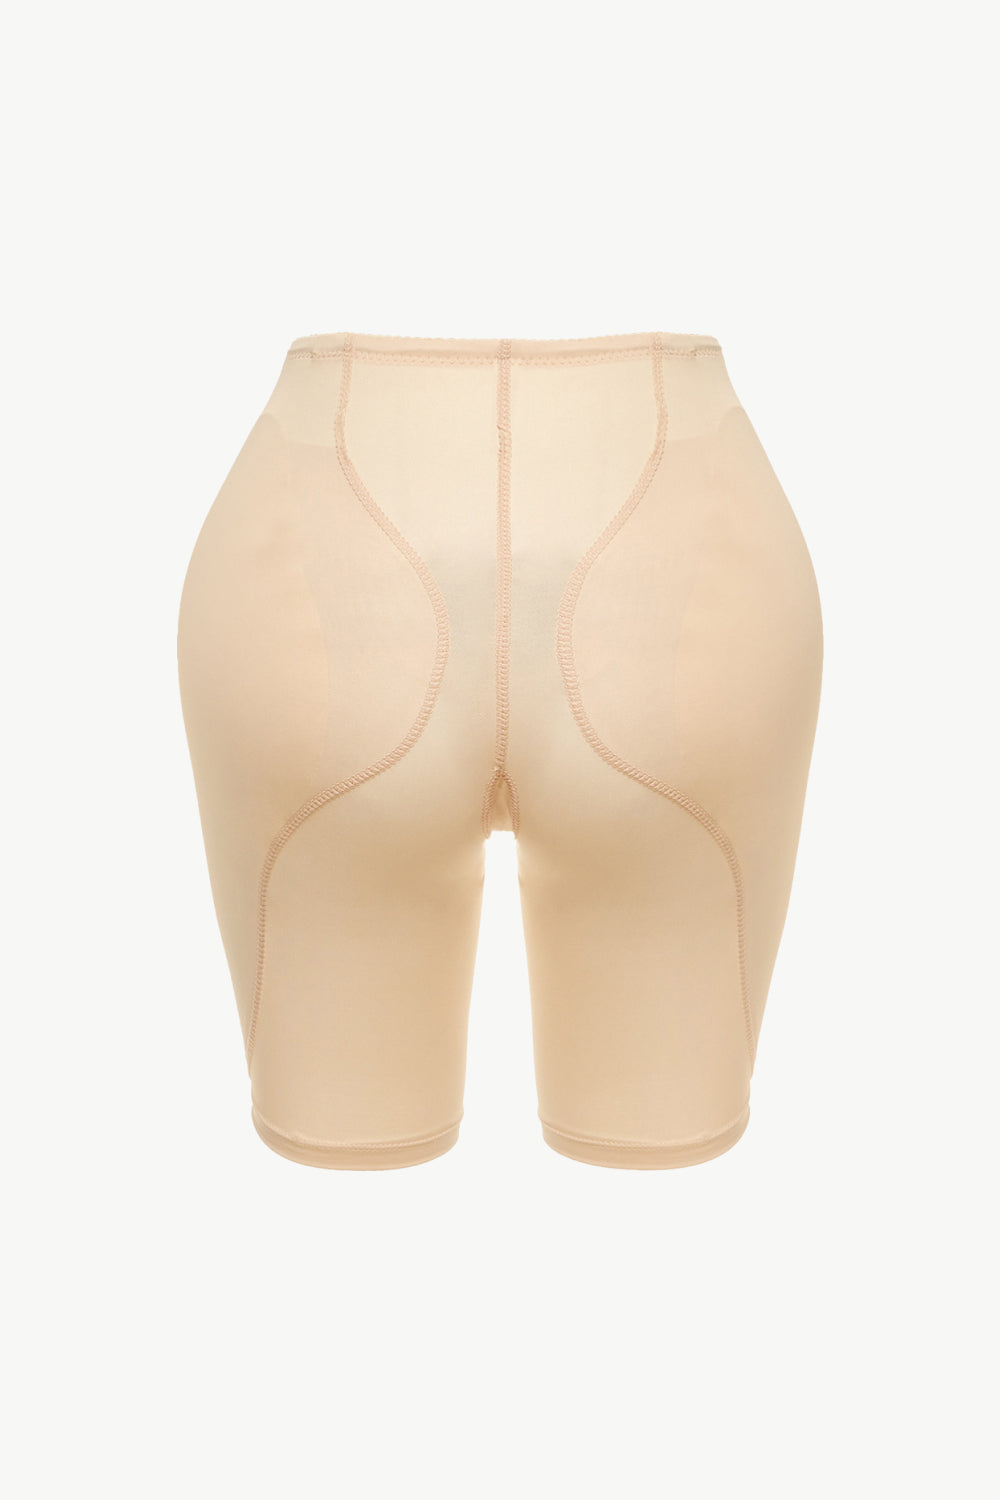 Pantalones cortos moldeadores sin cordones de tamaño completo